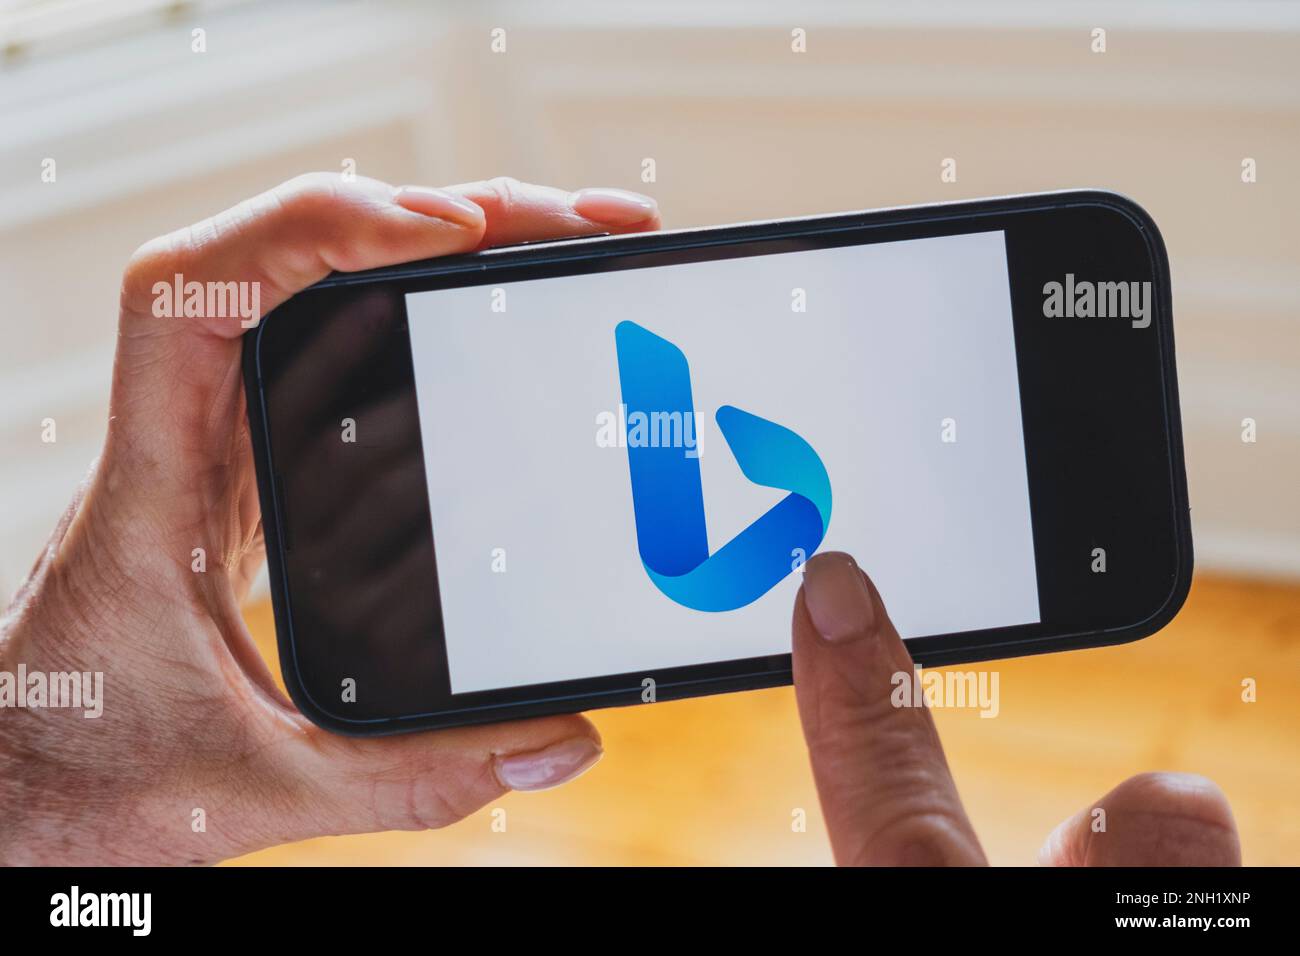 La persona tiene il telefono cellulare che mostra il nuovo logo del motore di ricerca Microsoft ChatGPT OpenAI Bing sullo schermo Foto Stock